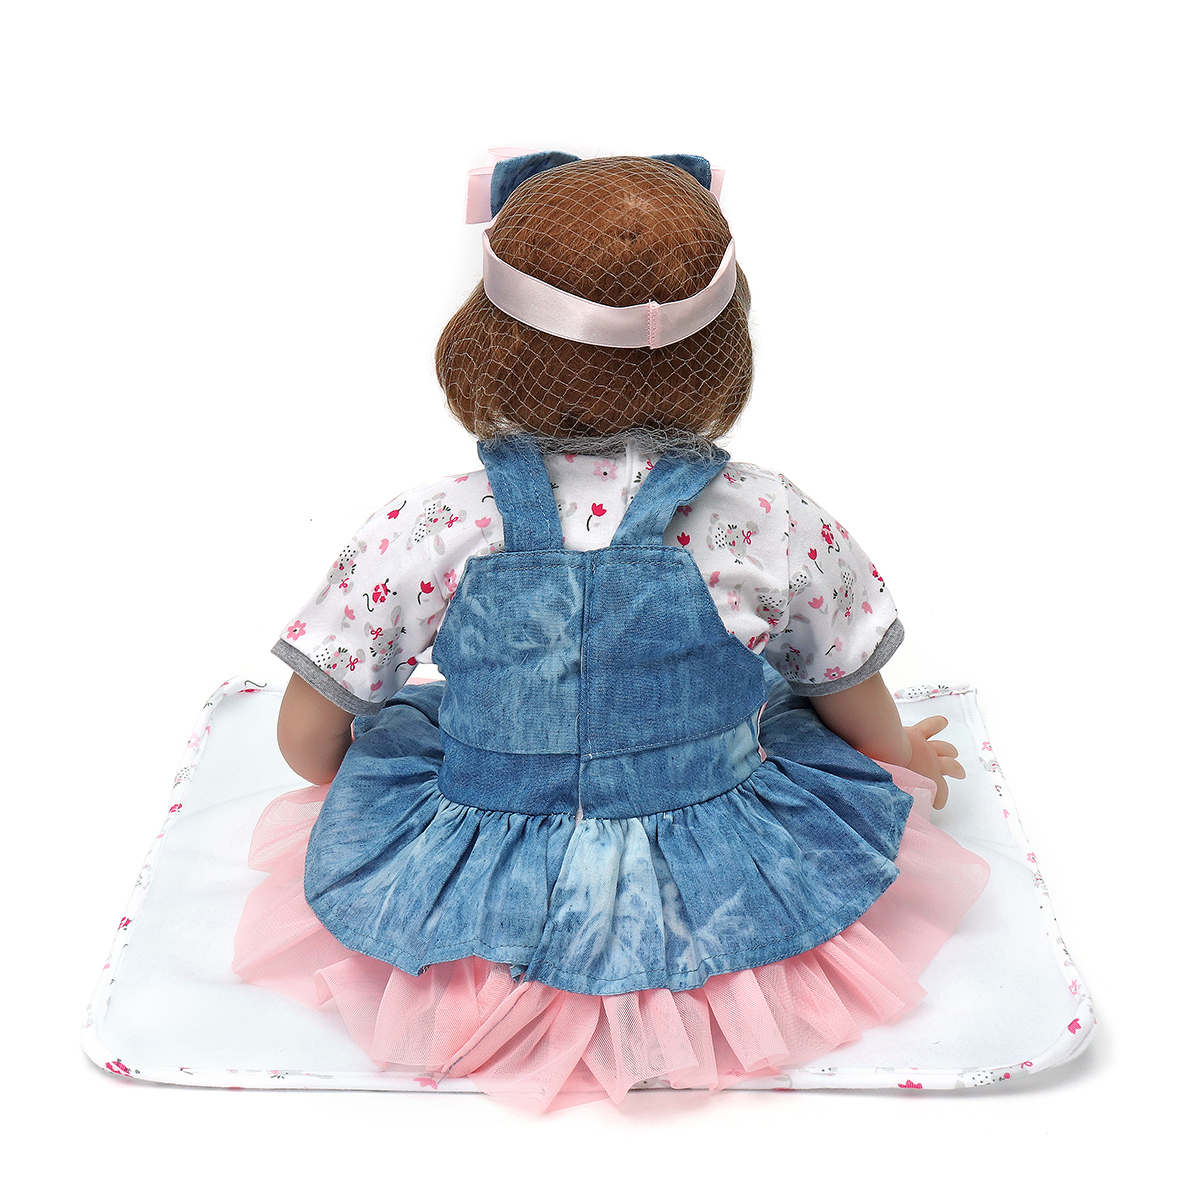 Oubeier-Reborn-Doll-Vinyl-Body-55CM-Handmade-Silicone-Girl-Lovely-Cloth-Toys-Kids-Gift-1414135-4